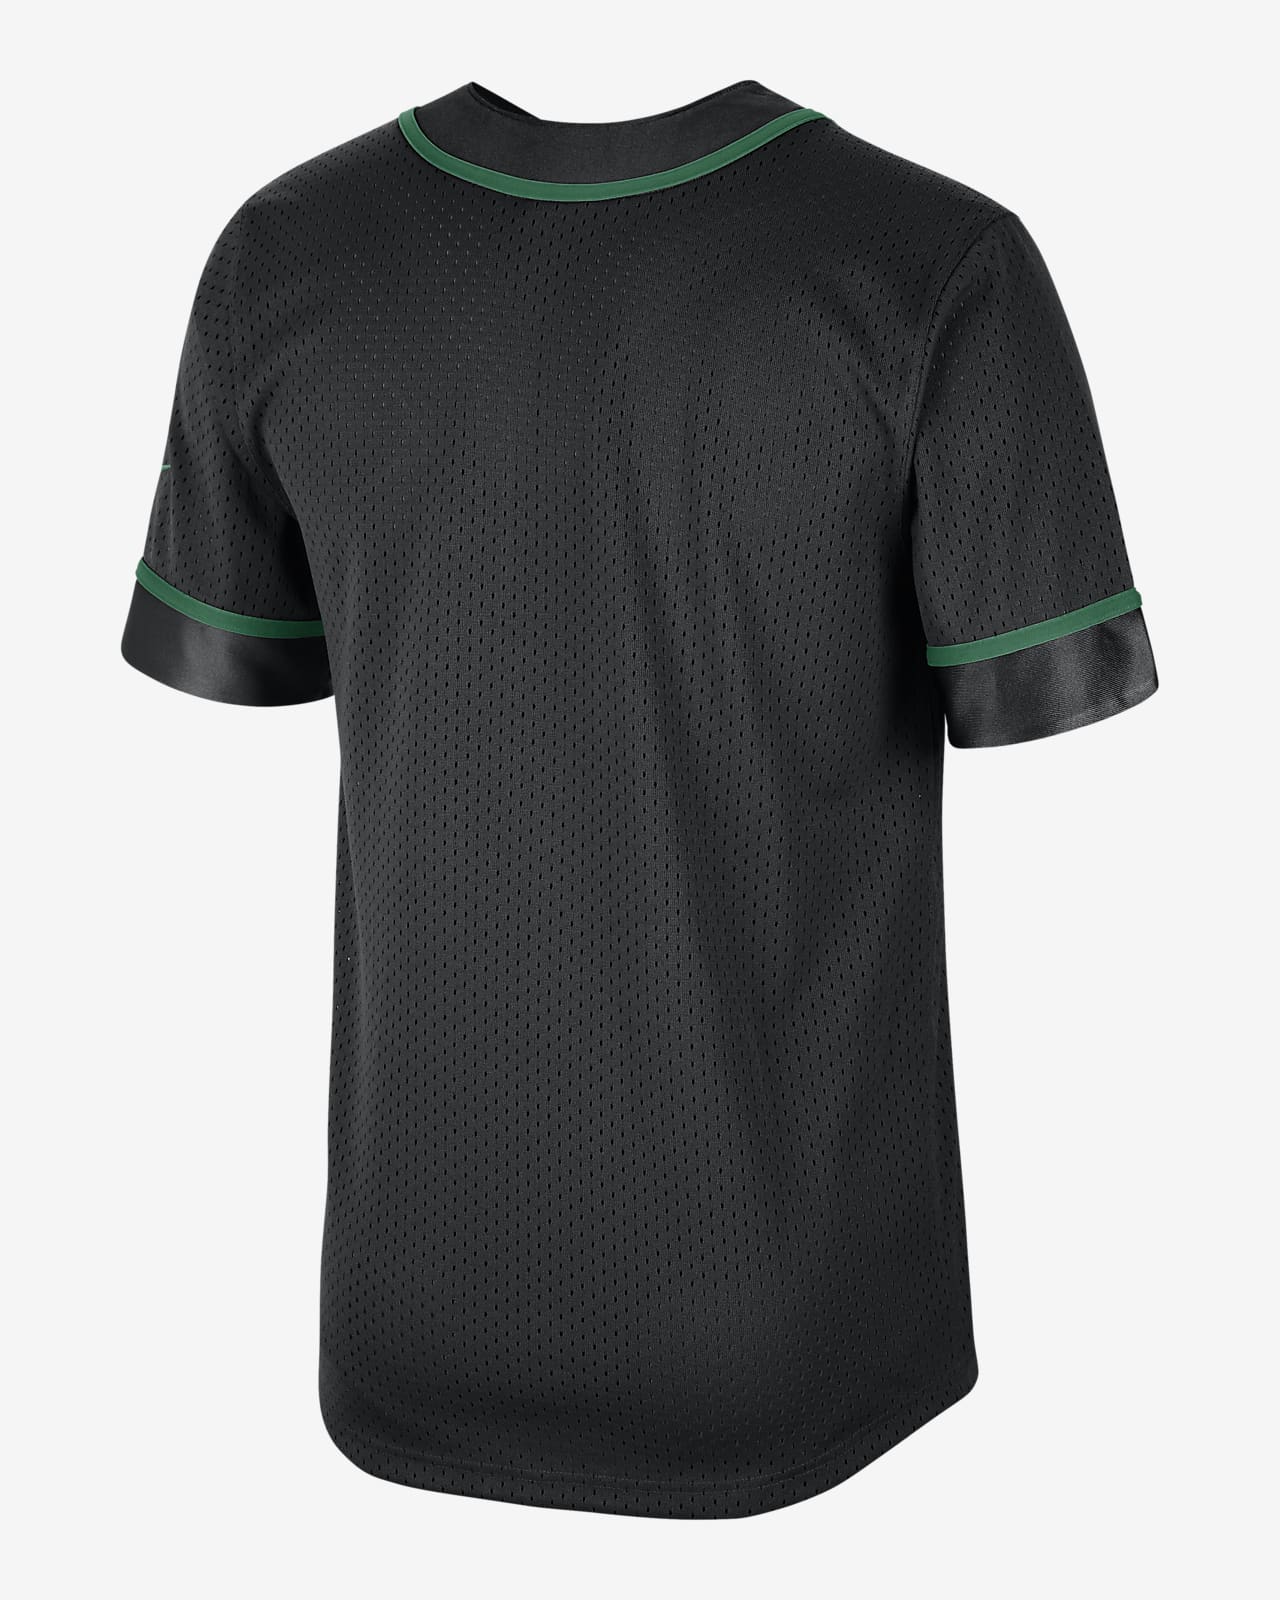 Boston Celtics Nike Dri-FIT Men's NBA T-Shirt.